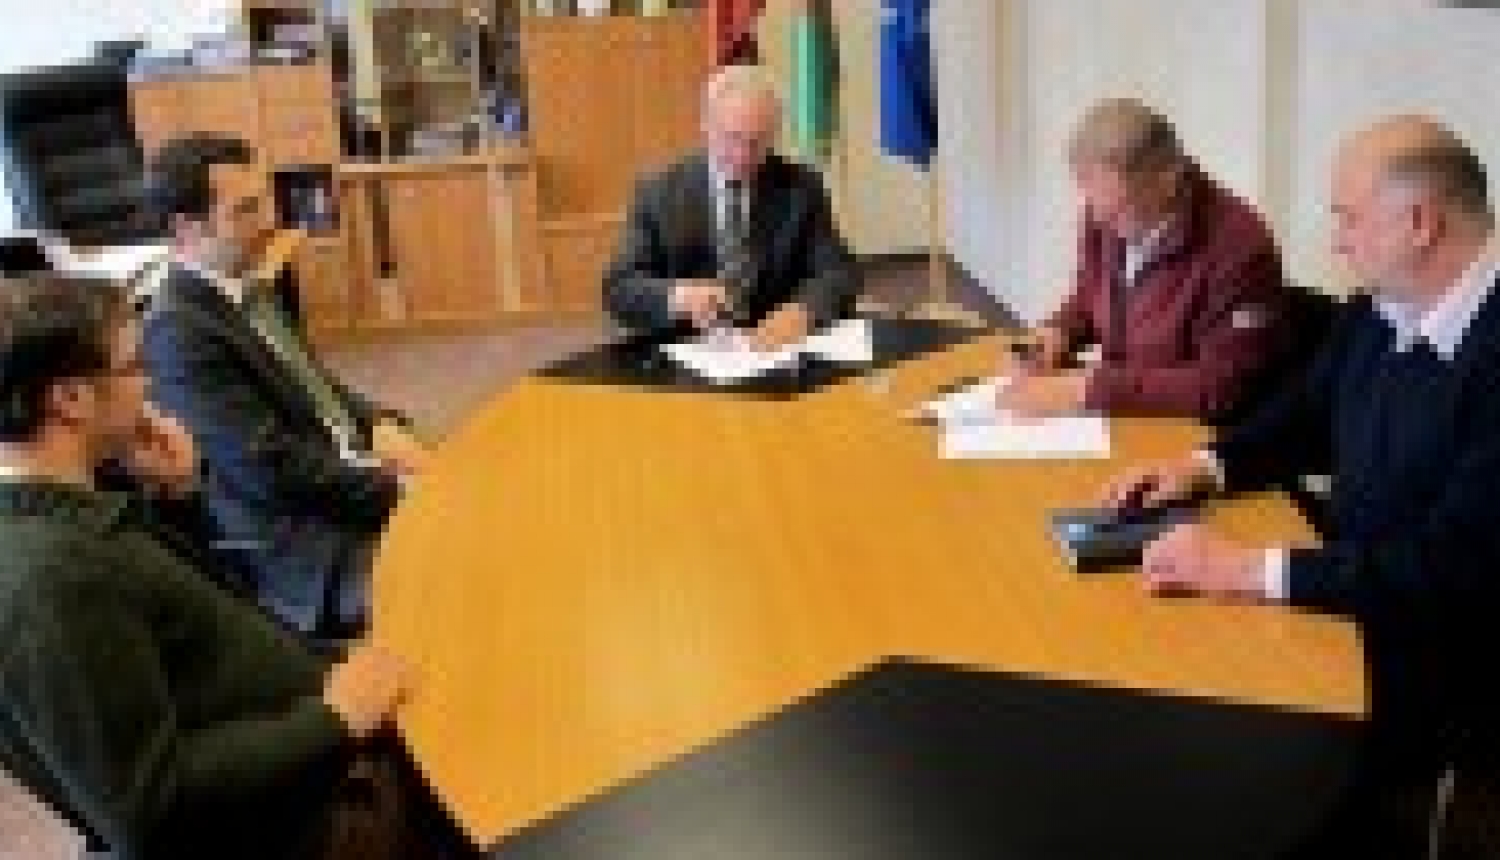 Noslēgts līgums par ūdensapgādes un kanalizācijas tīklu rekonstrukciju un paplašināšanu Valkā